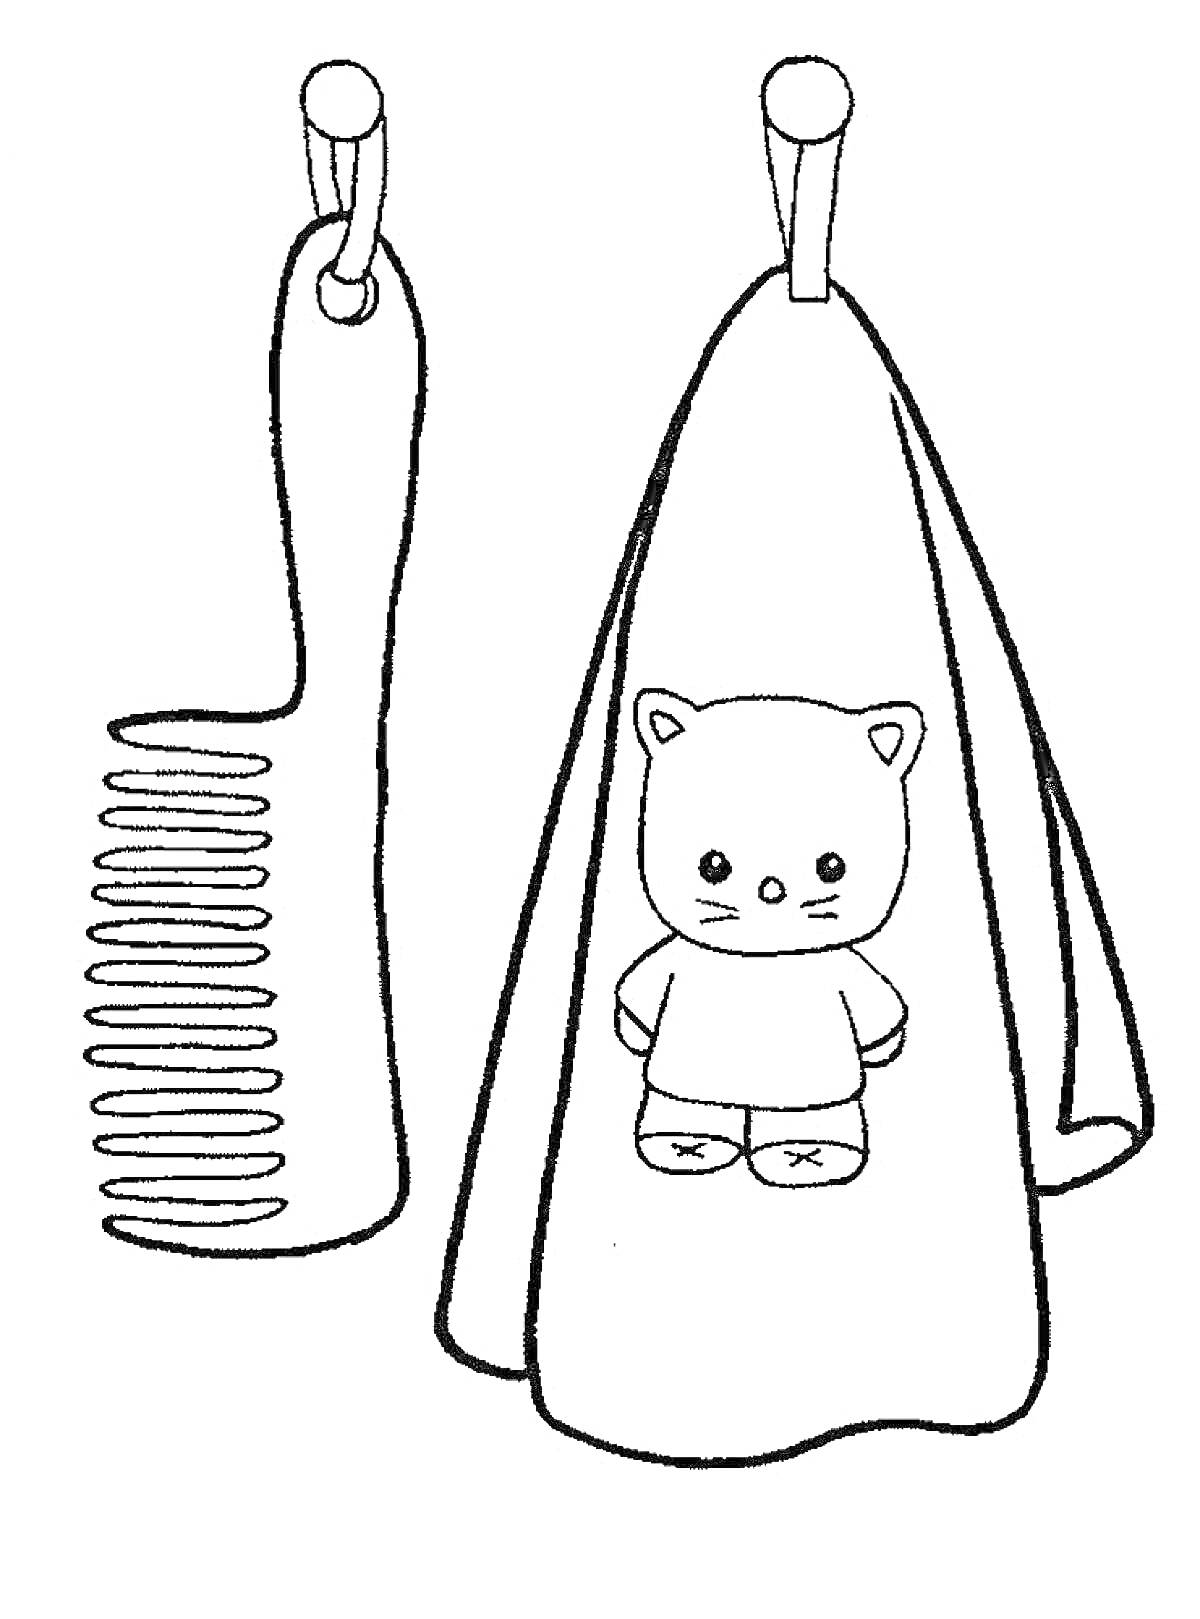 Рисунок с полотенцем с медвежонком и расческой на крючках